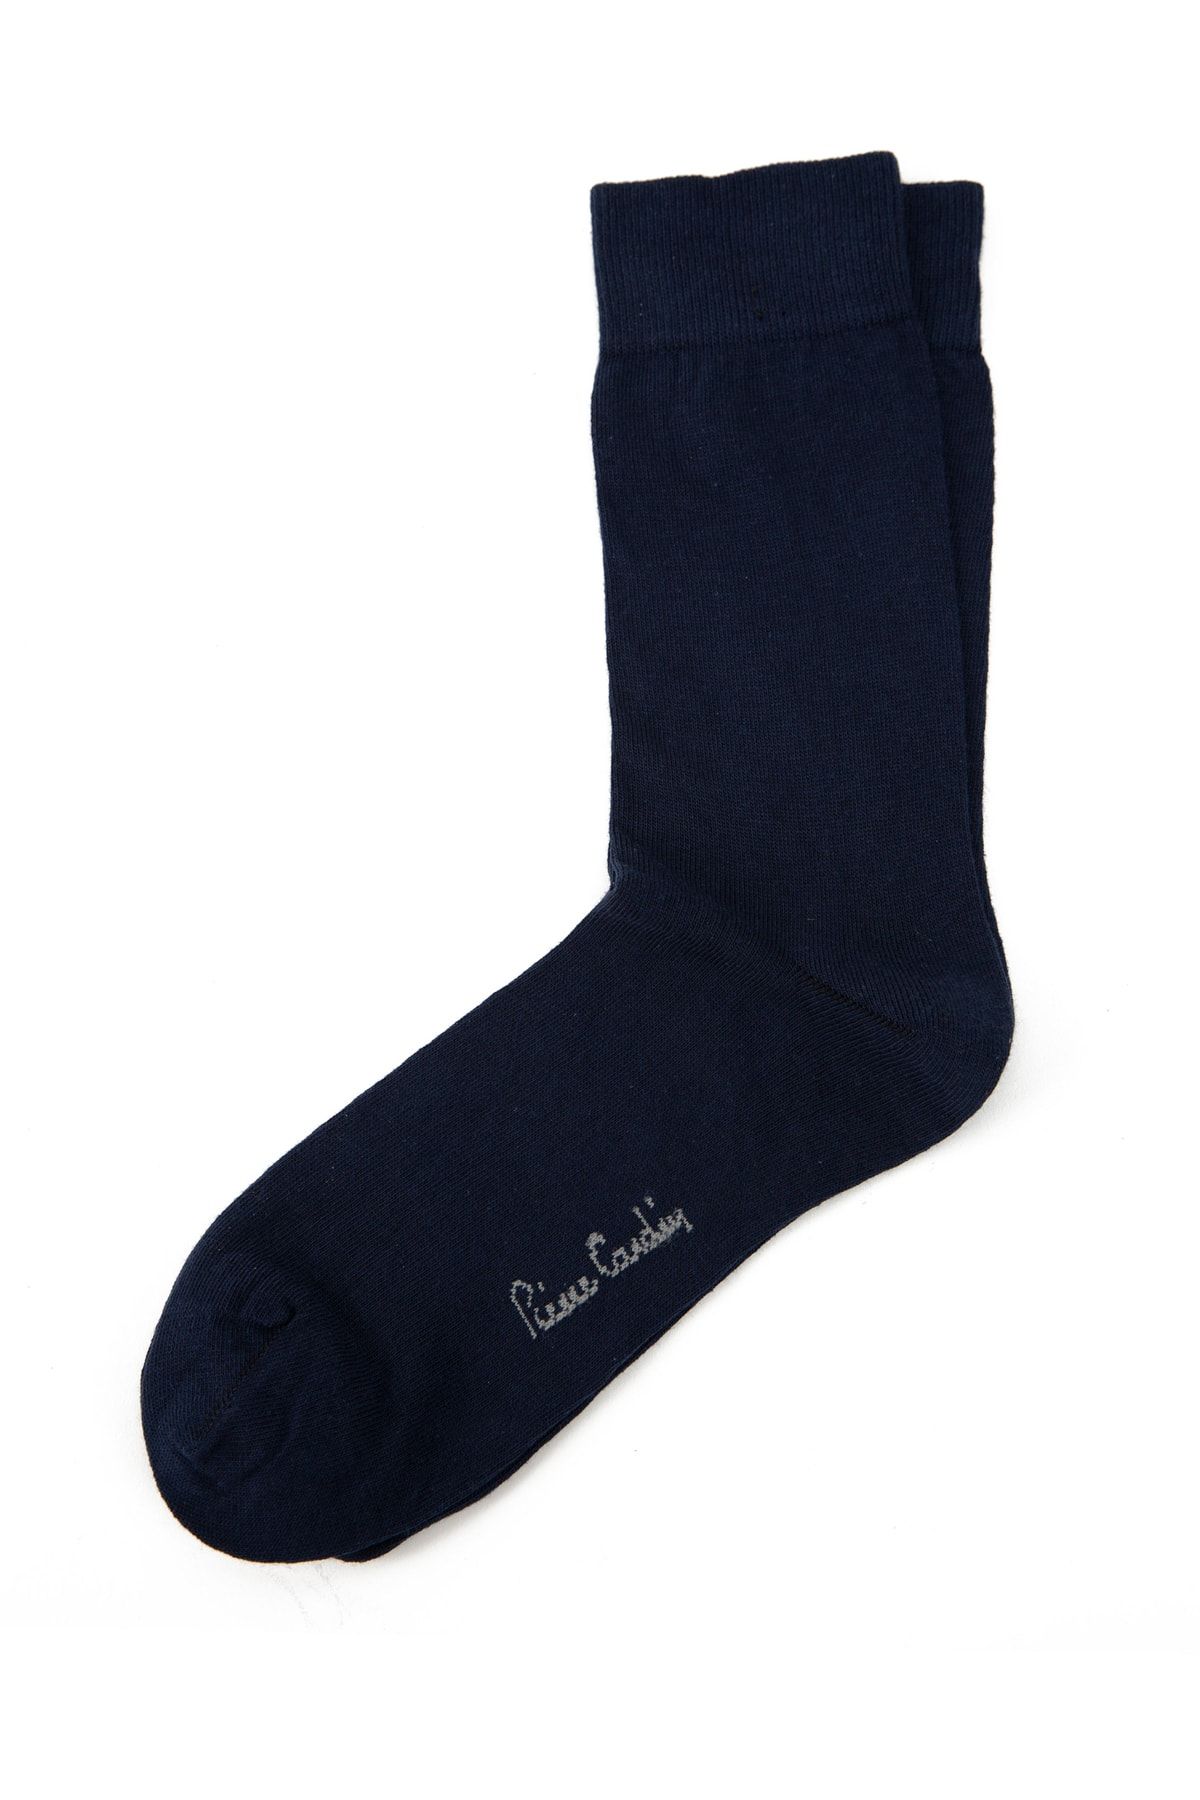 Pierre Cardin Erkek Çorap A021AK013.000.O20-19K